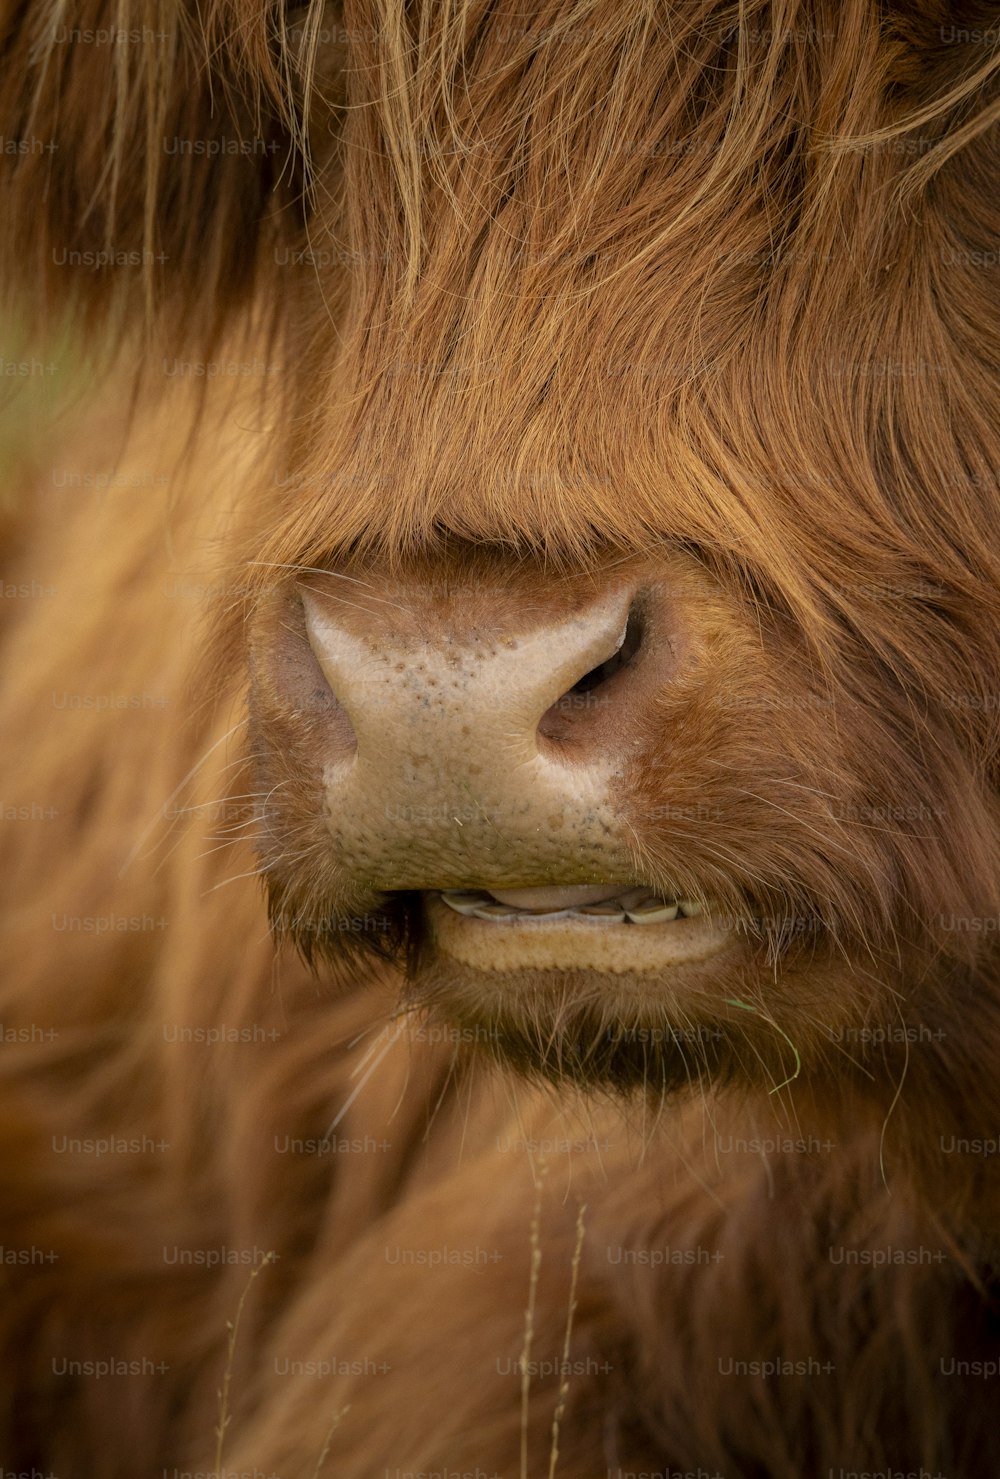 um close up do rosto de uma vaca marrom